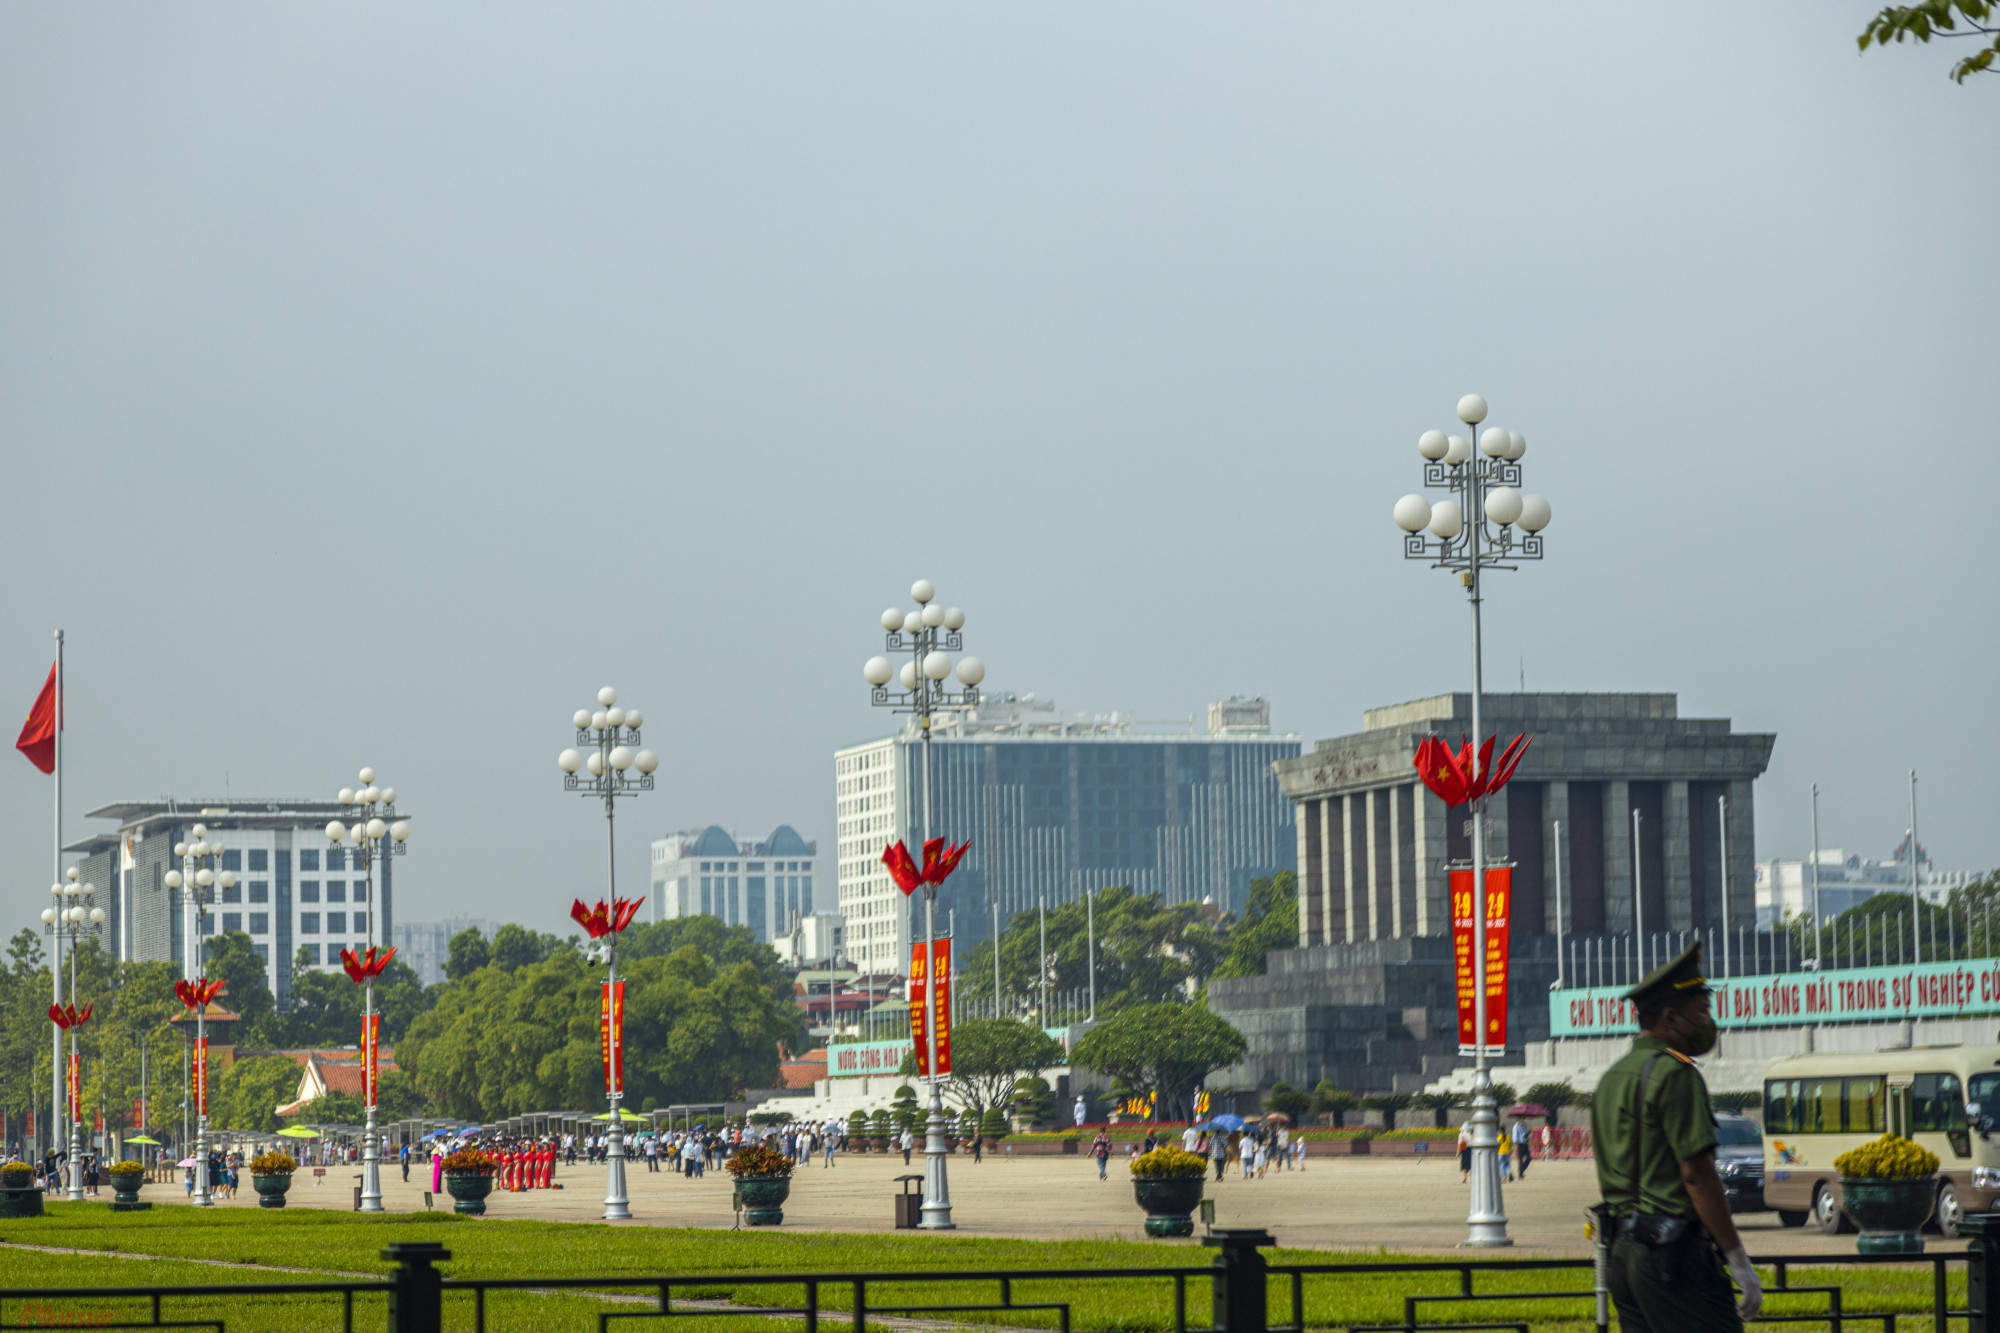 Tại nhiều tuyến phố như gần Quảng trường Ba Đình như Hoàng Diệu, Hùng Vương, Điện Biên Phủ... đều rực rỡ sắc đỏ của màu cờ, băng rôn, khẩu hiệu, tranh cổ động, panô lớn.